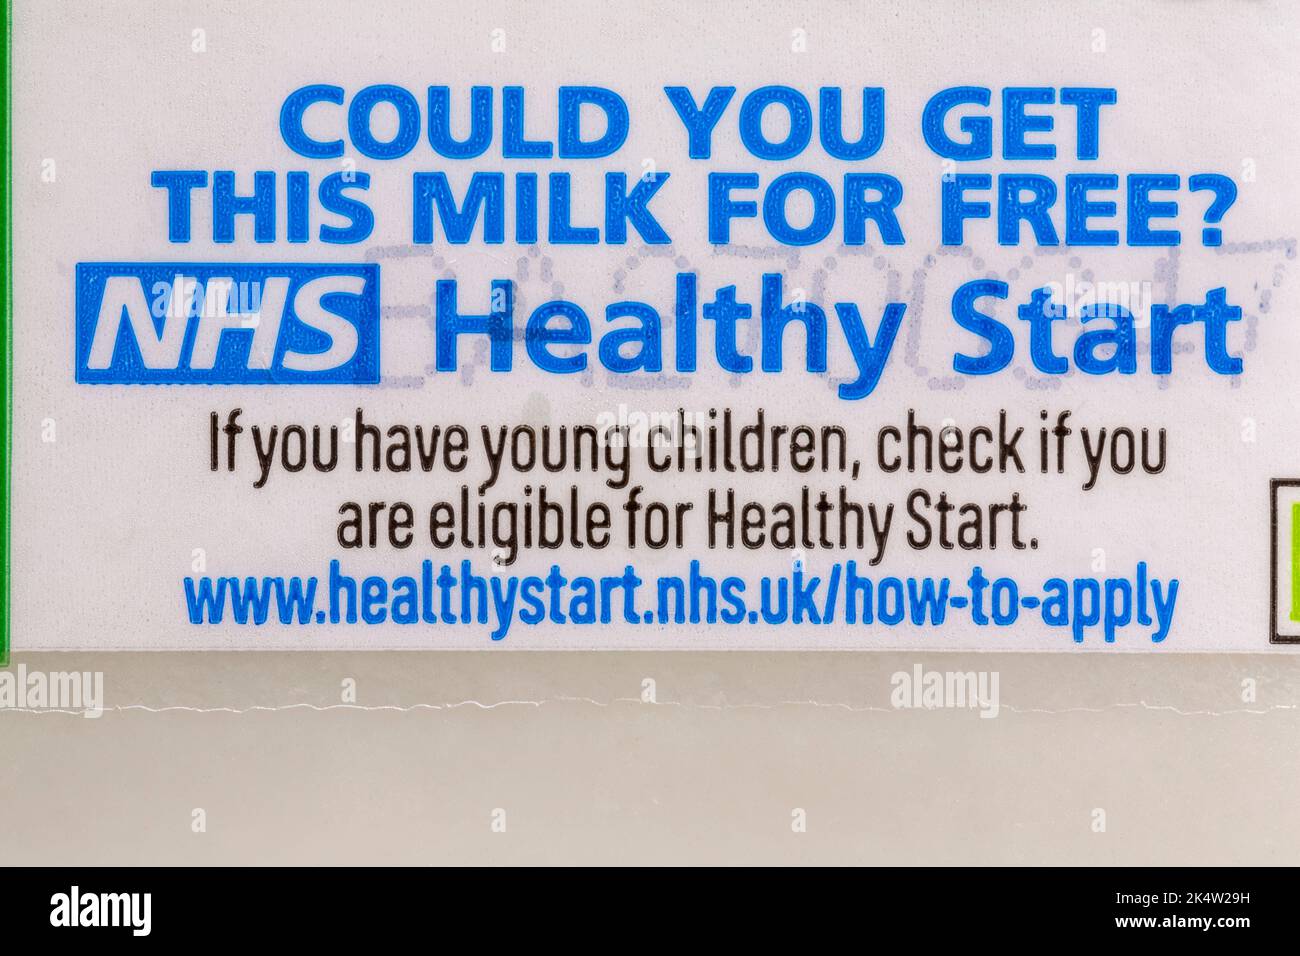 Potresti ottenere questo latte gratuitamente? NHS inizio sano se avete bambini piccoli controllare se siete eleggibili per inizio sano Foto Stock